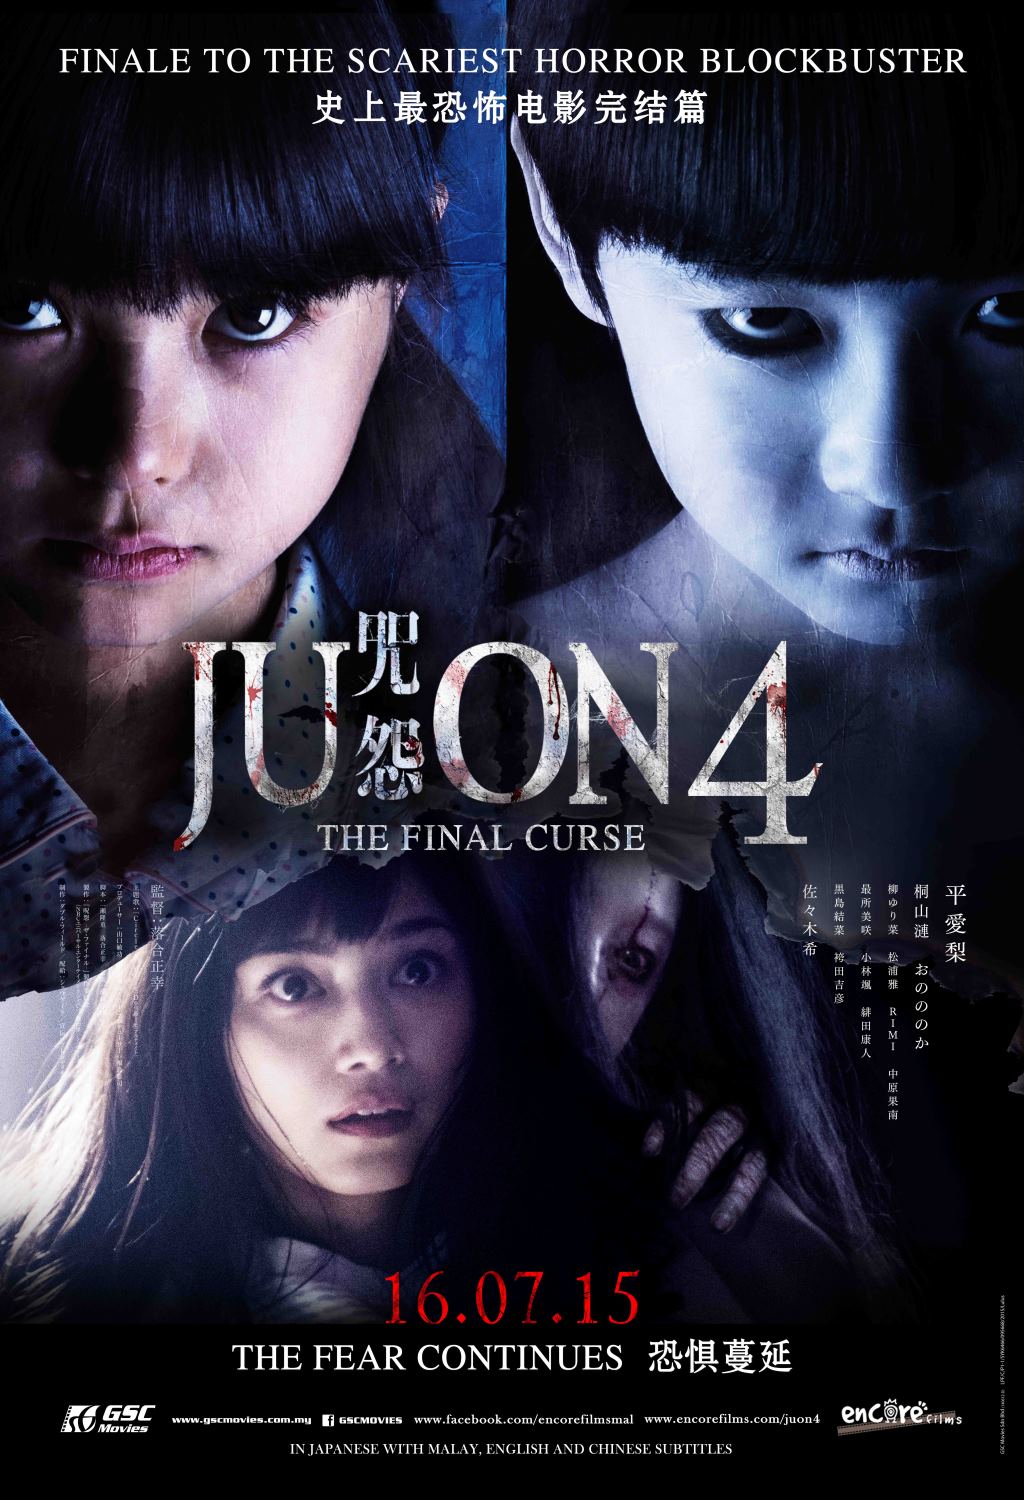 ดูหนังออนไลน์ฟรี JU-ON 4 (2009) ผี…ดุ 4 หนังเต็มเรื่อง หนังมาสเตอร์ ดูหนังHD ดูหนังออนไลน์ ดูหนังใหม่